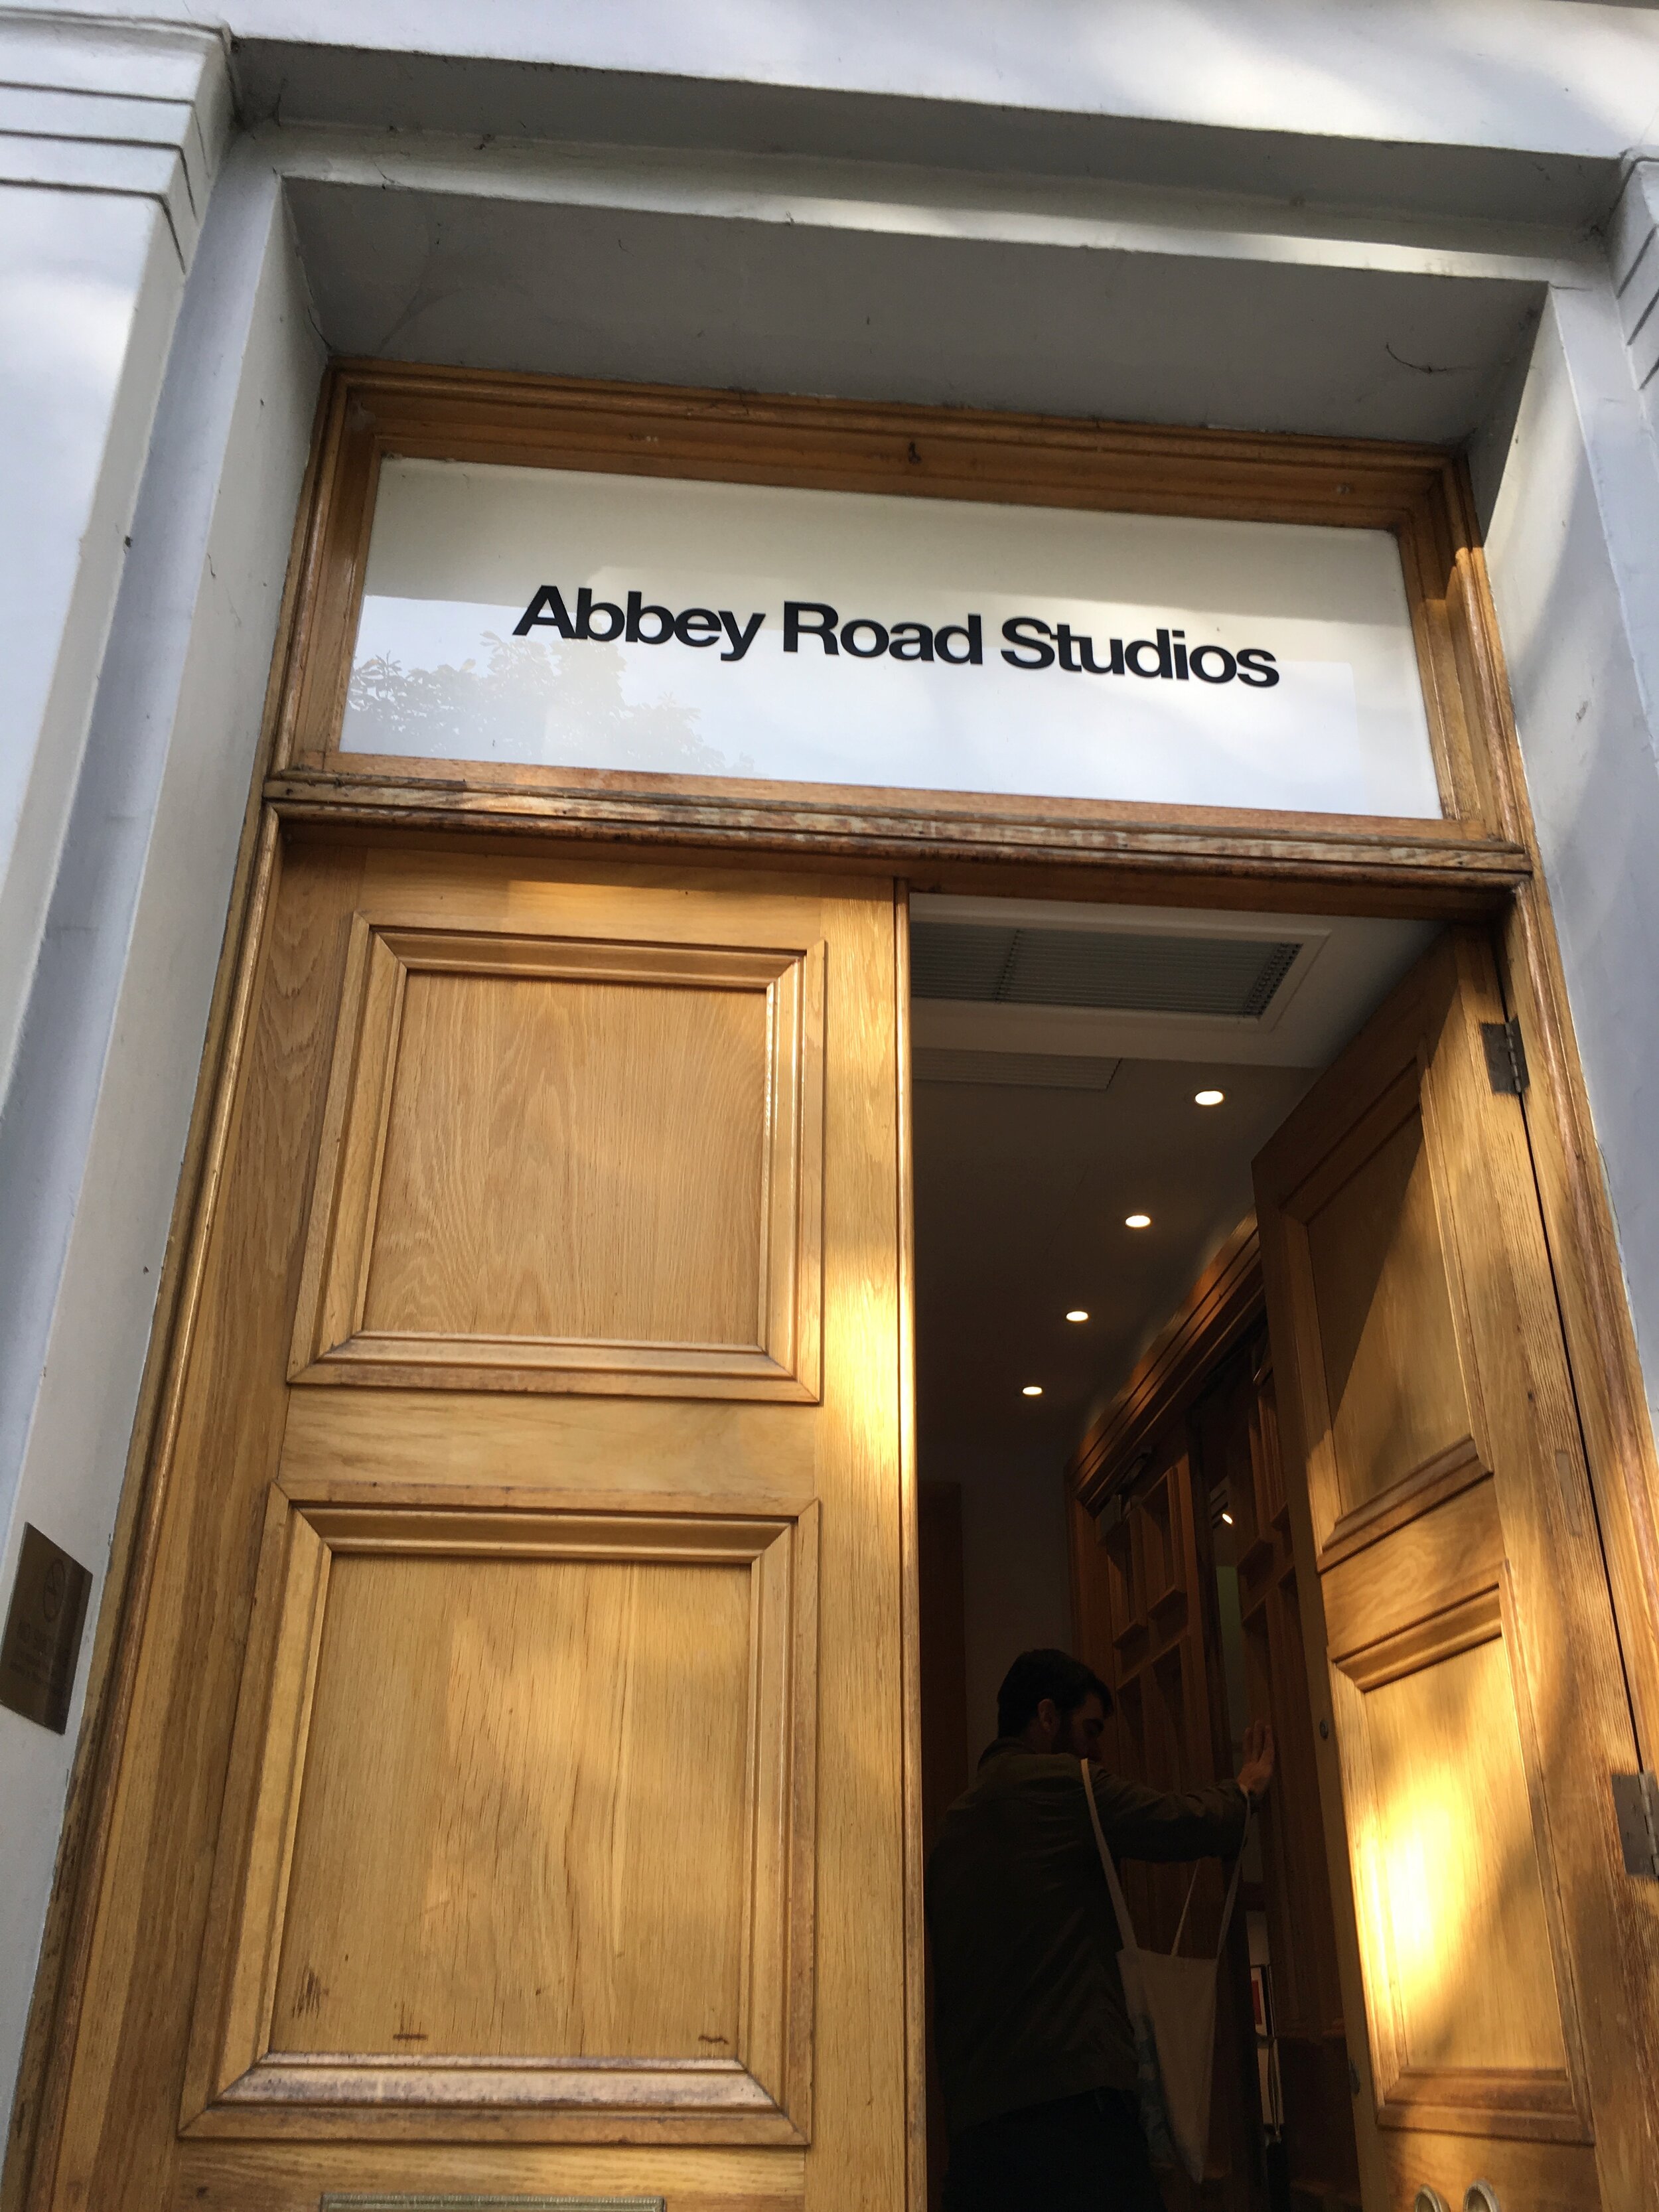 Soundtrack mixed at Abbey Road Studios